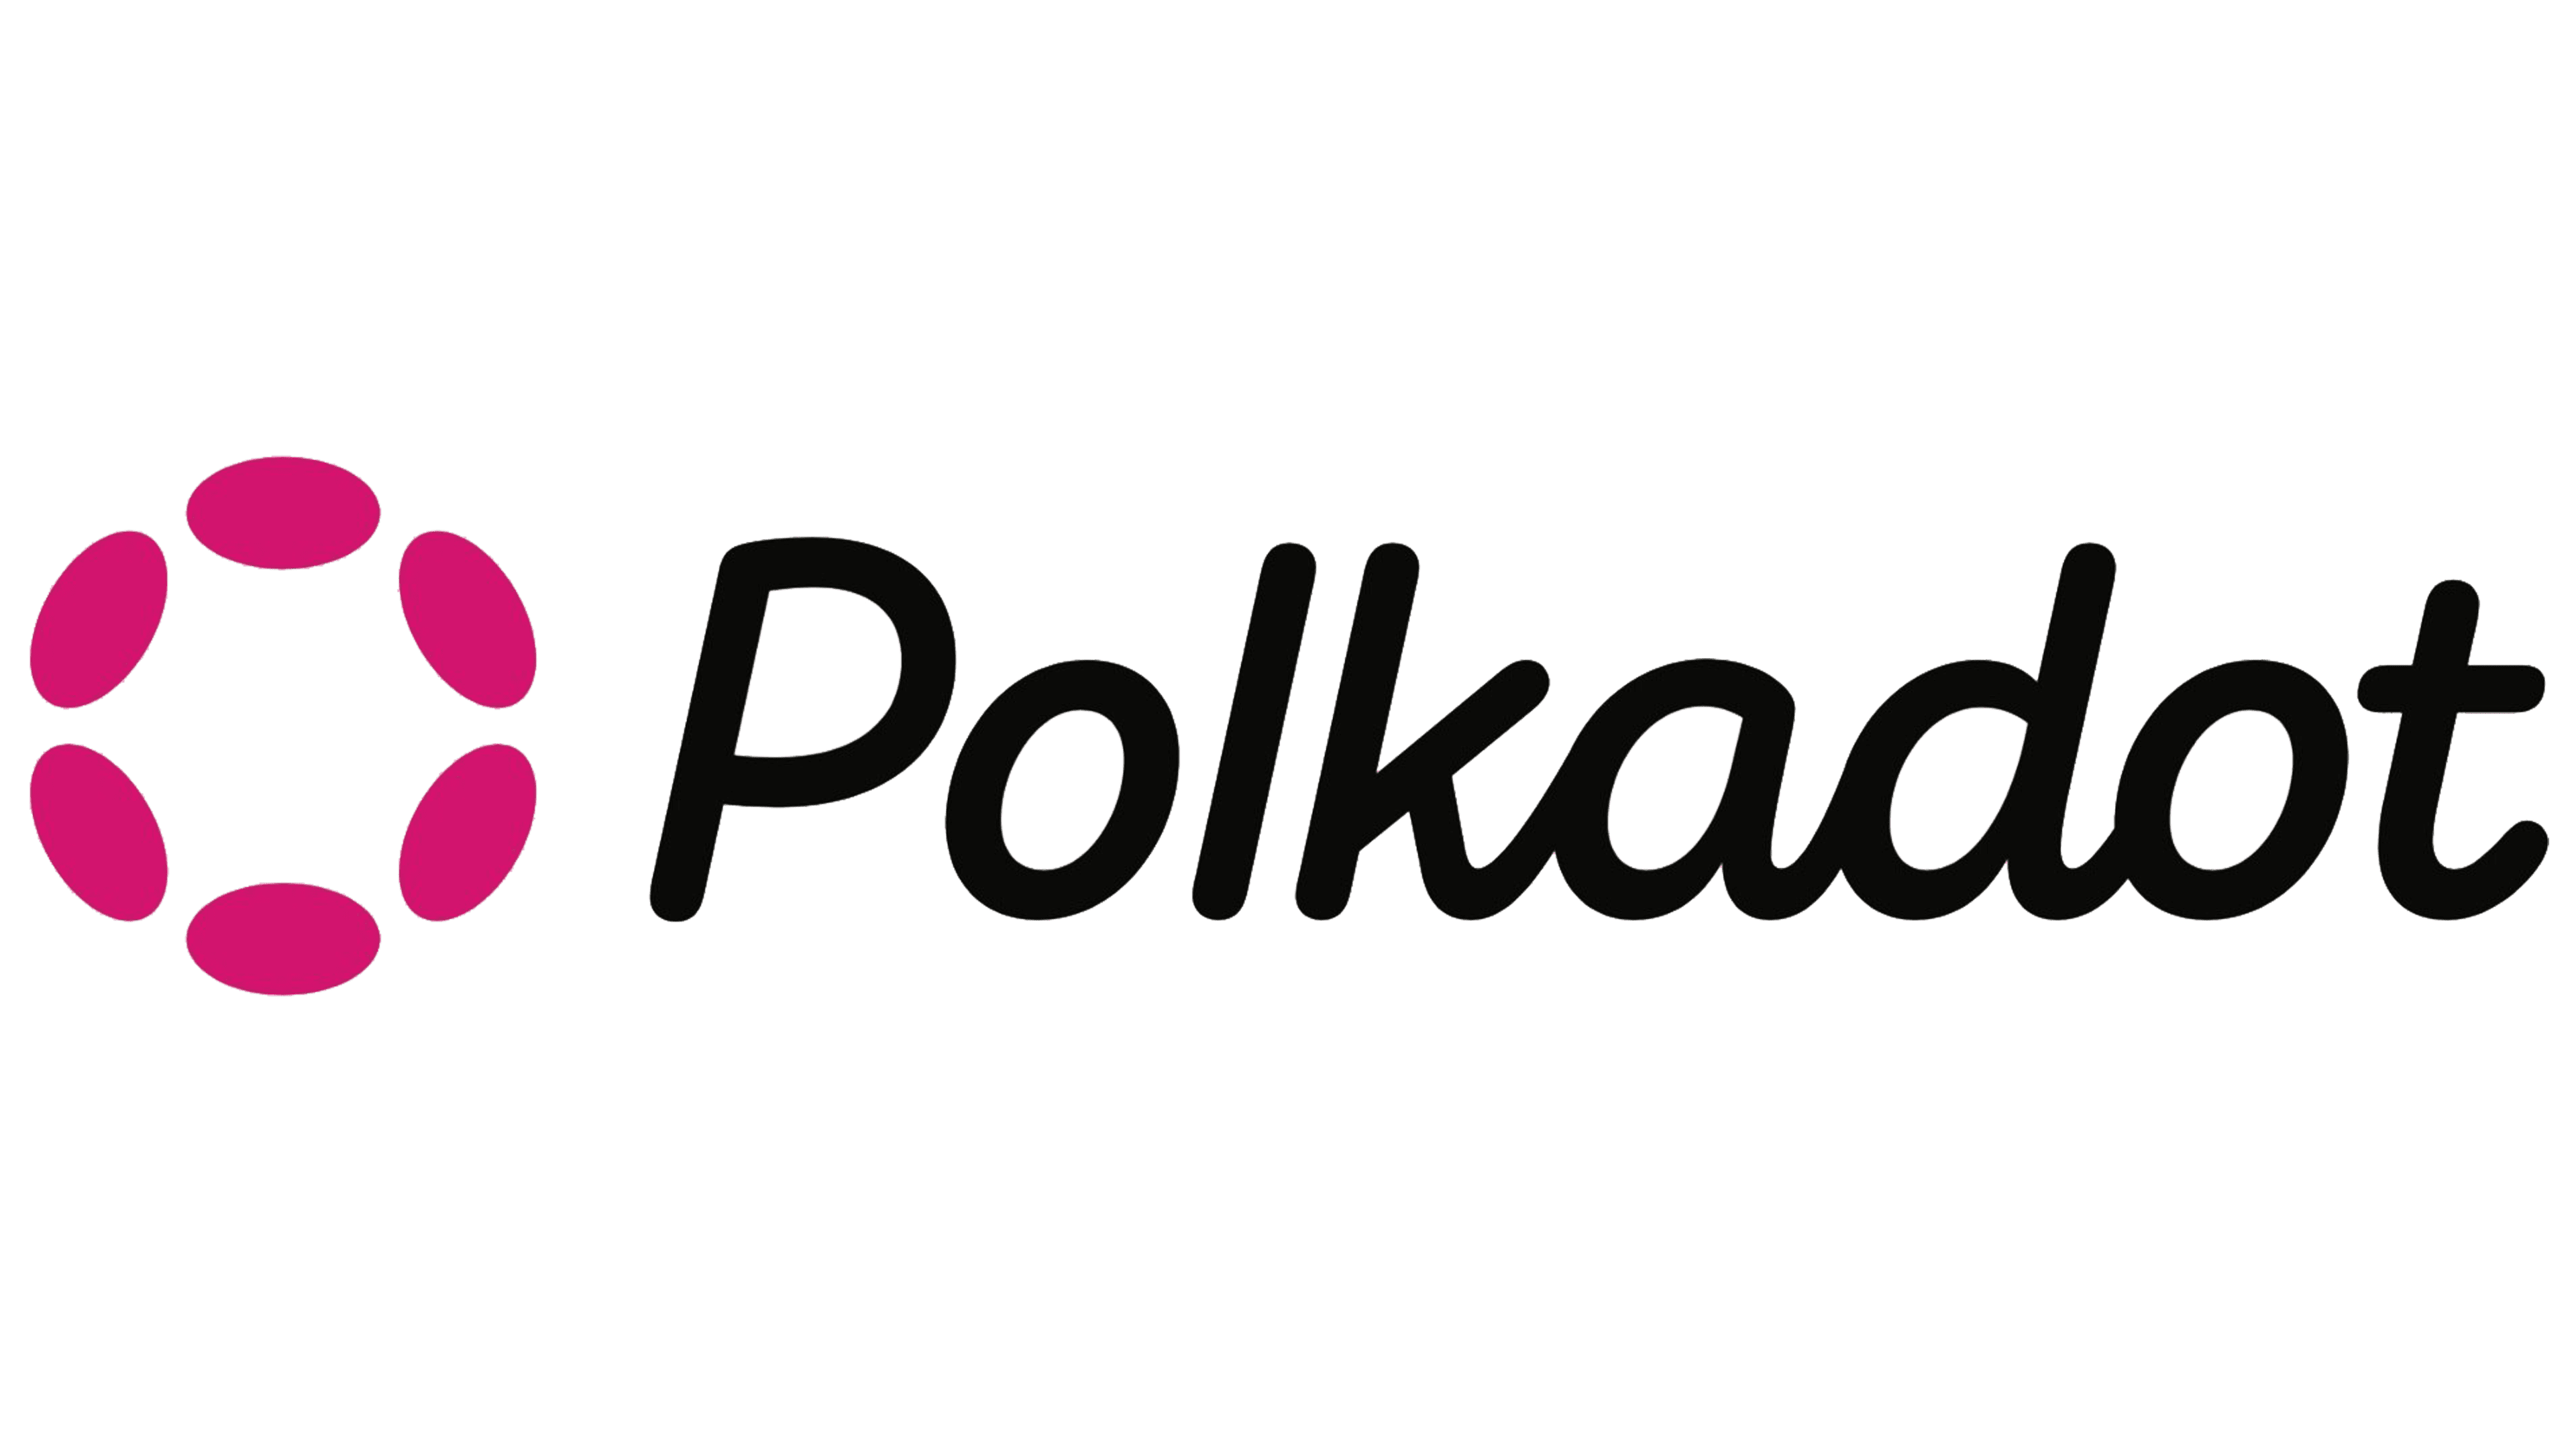 What is Polkadot (DOT)?